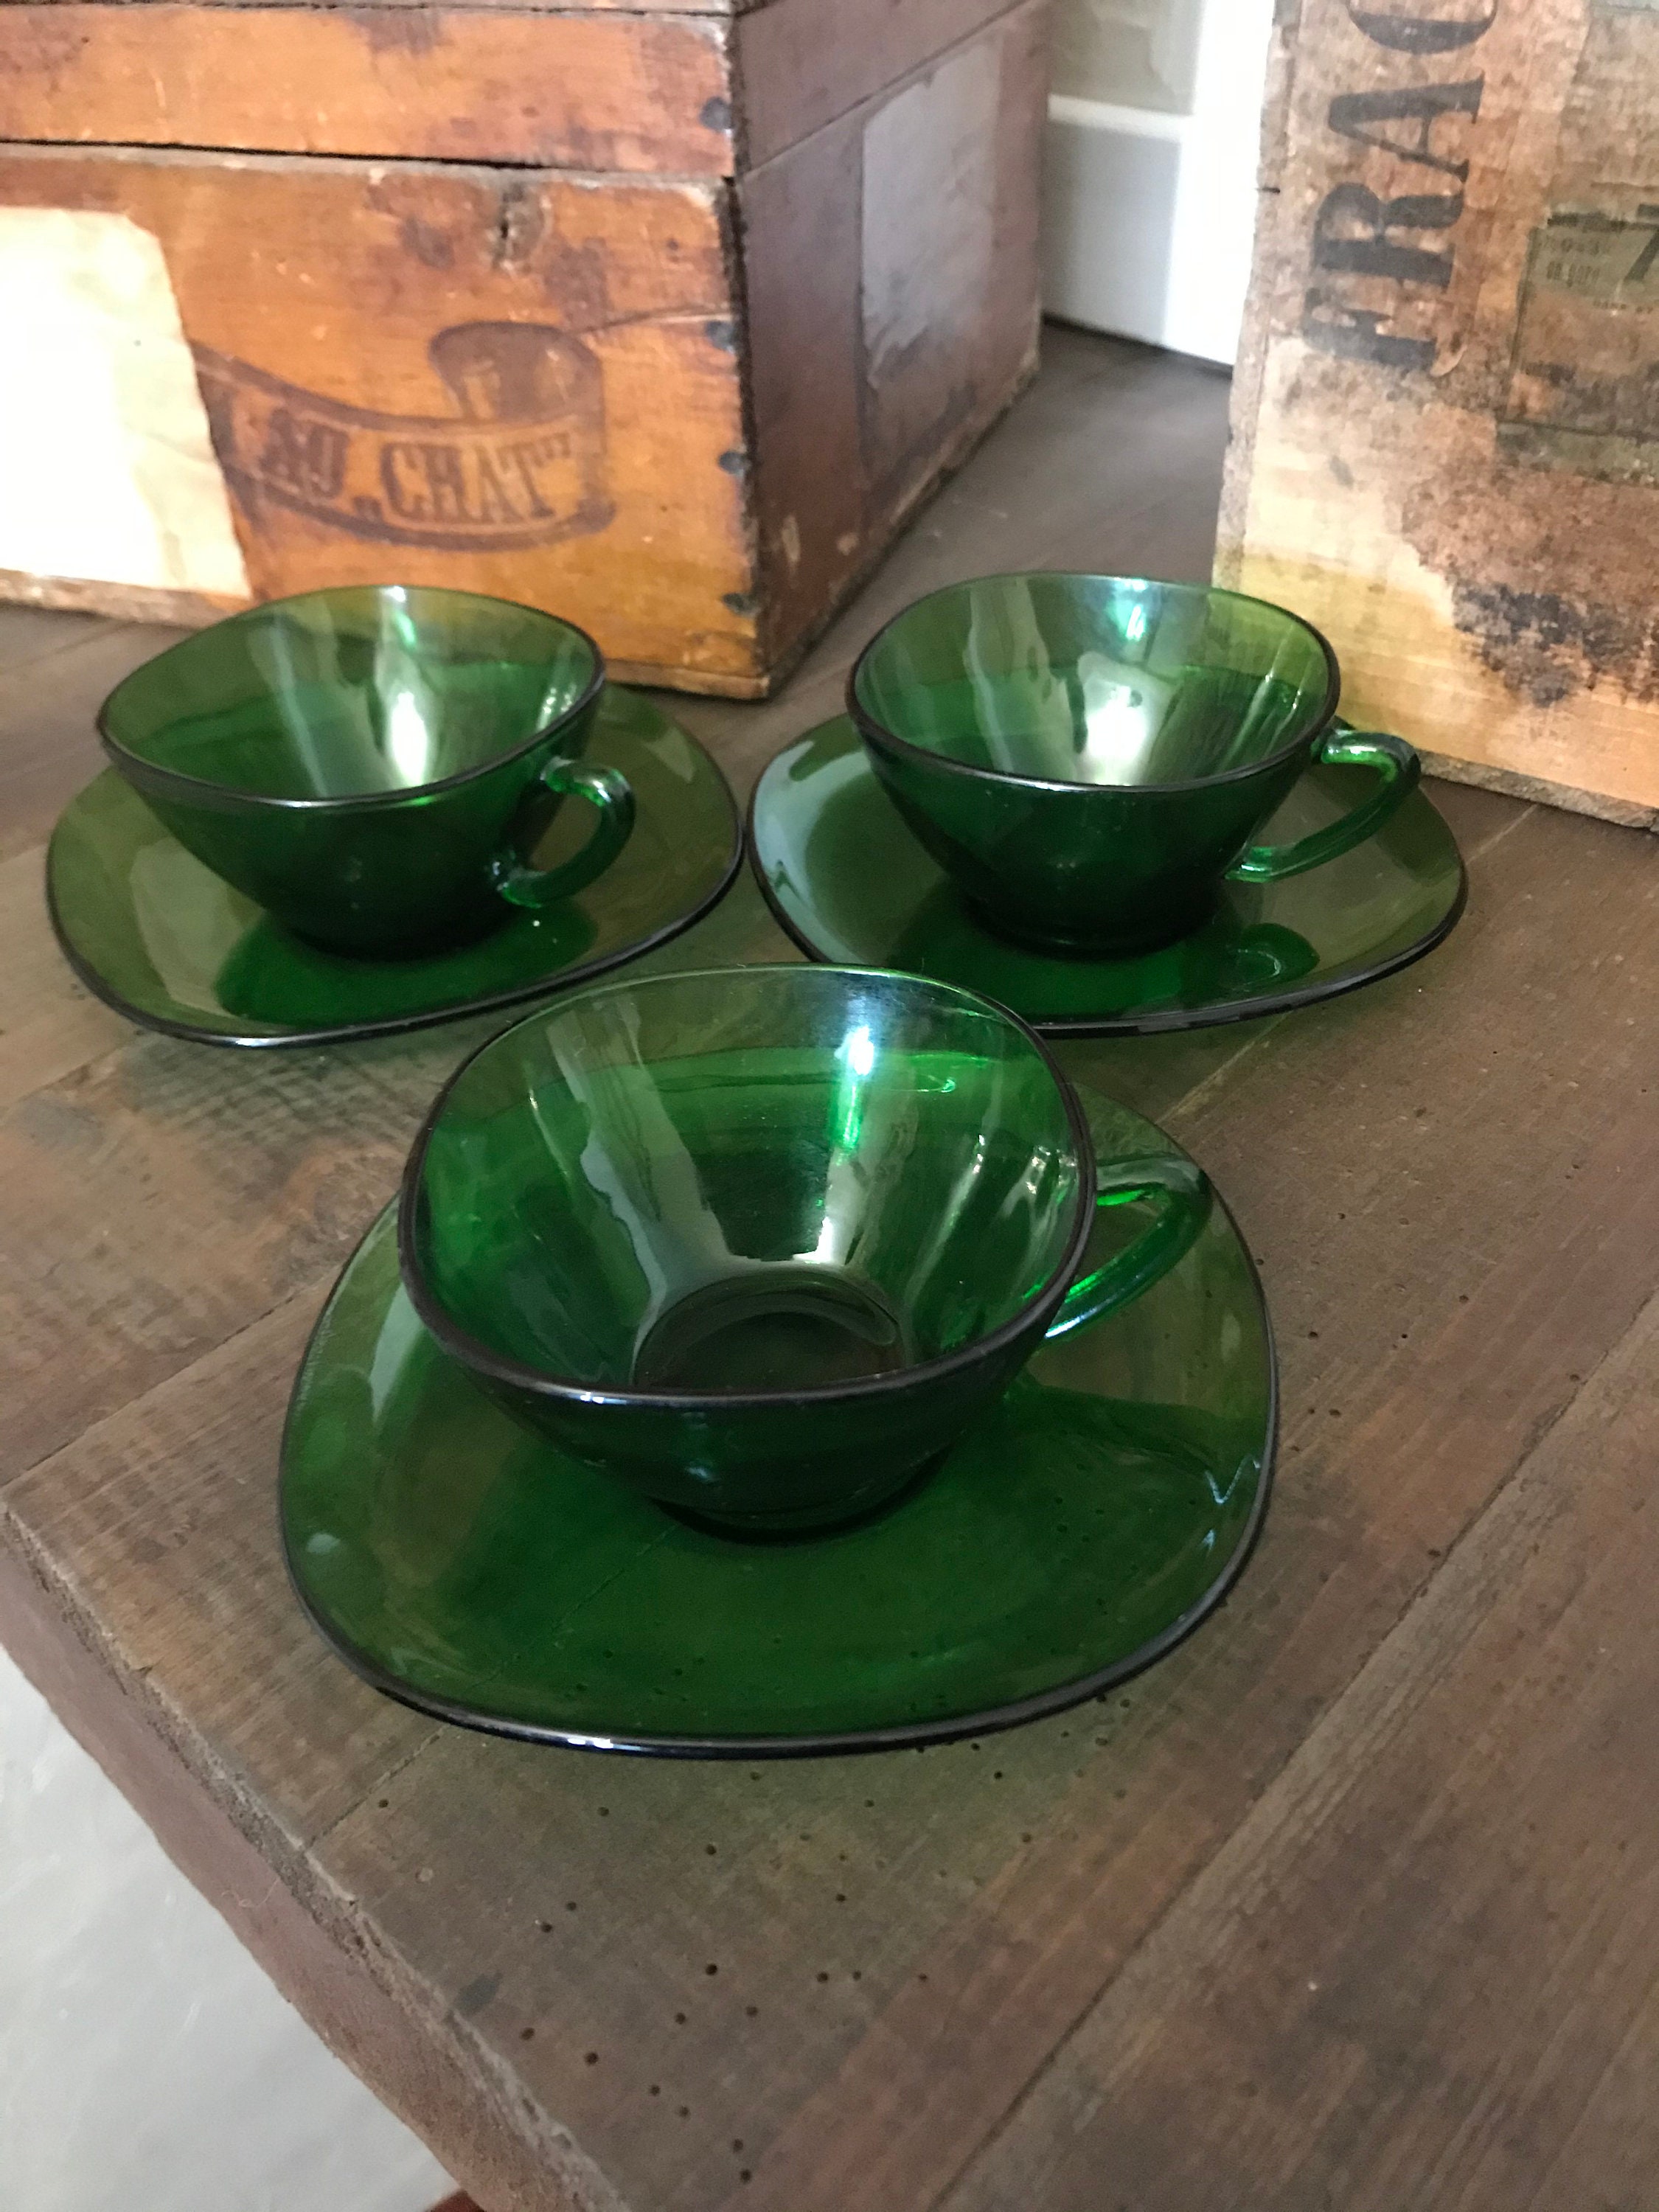 Vintage Vereco Emerald Green Cups & Saucers Set, Tasses à Café, Made in France - 60's Français Usten